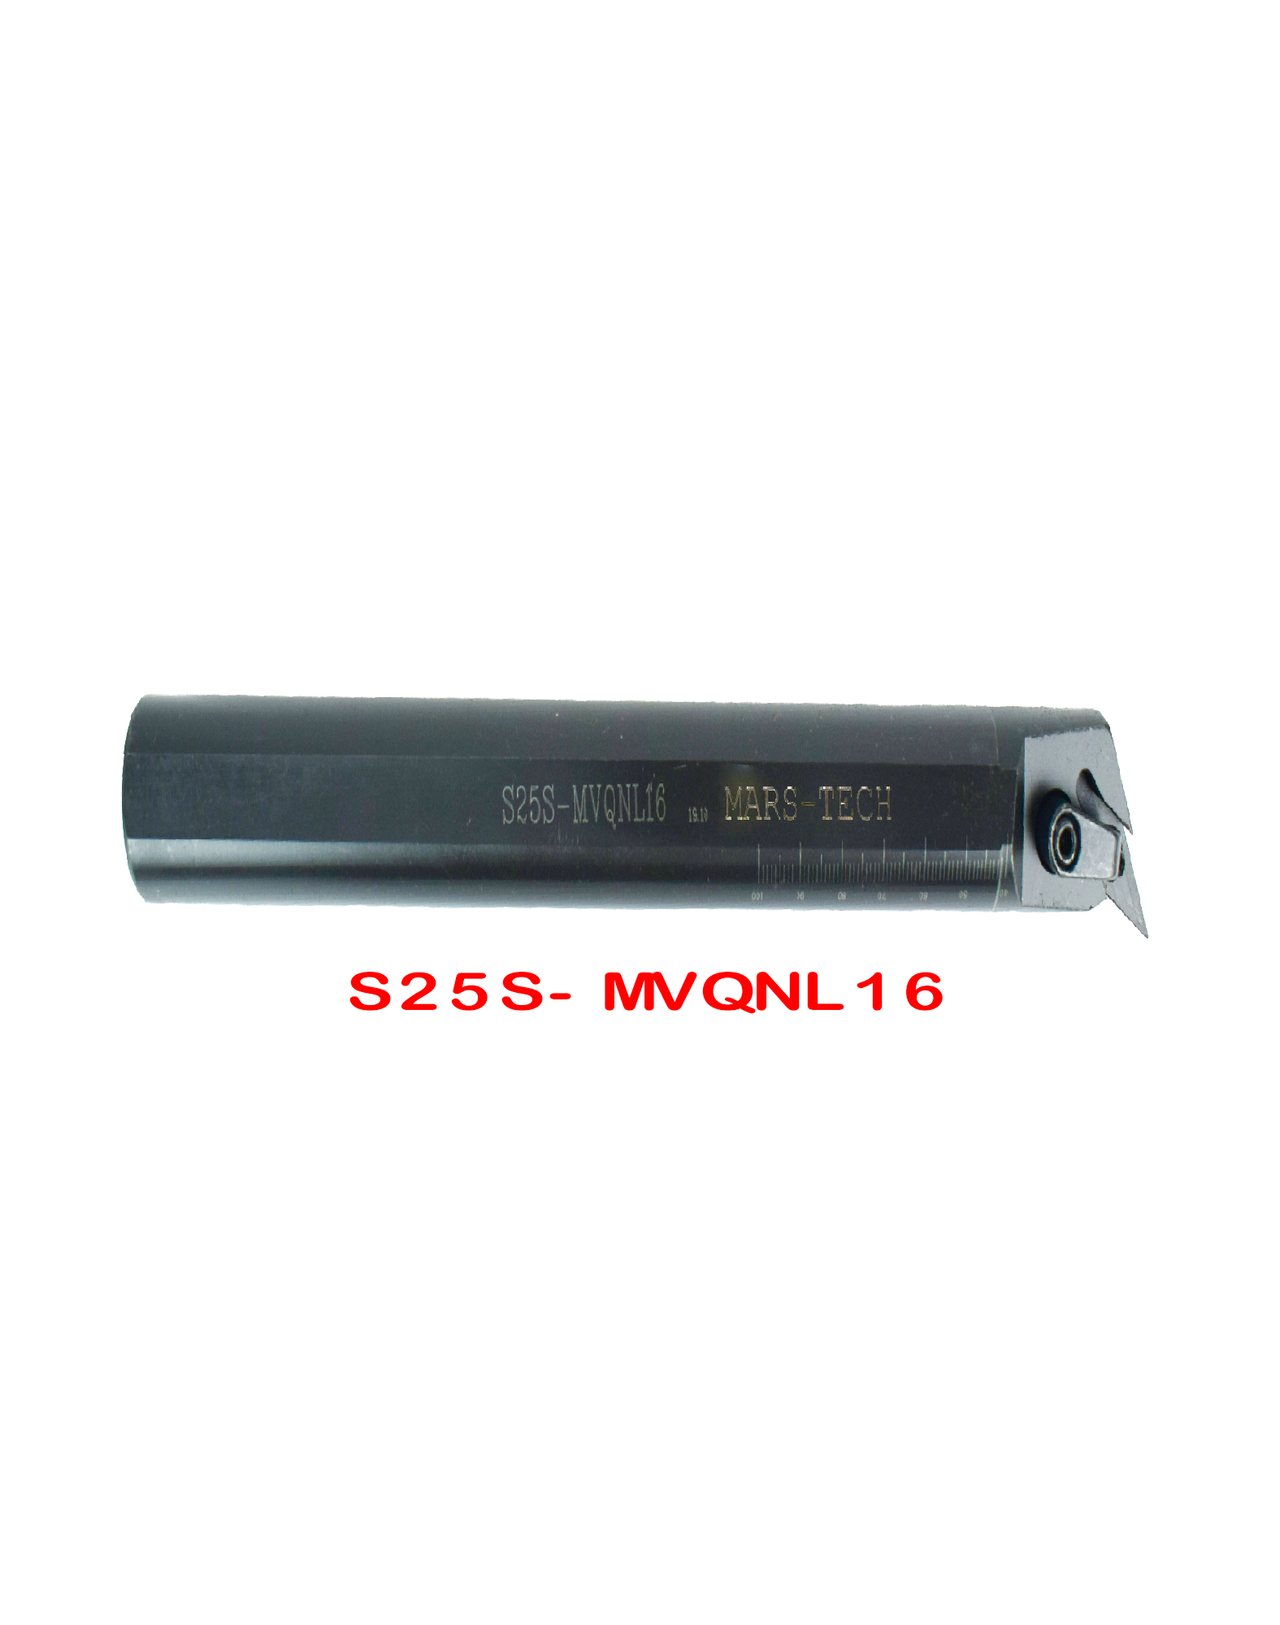 MVQNR/L VNMG1604 boring bar angle Boring Bar dia 25/32 pack of 1